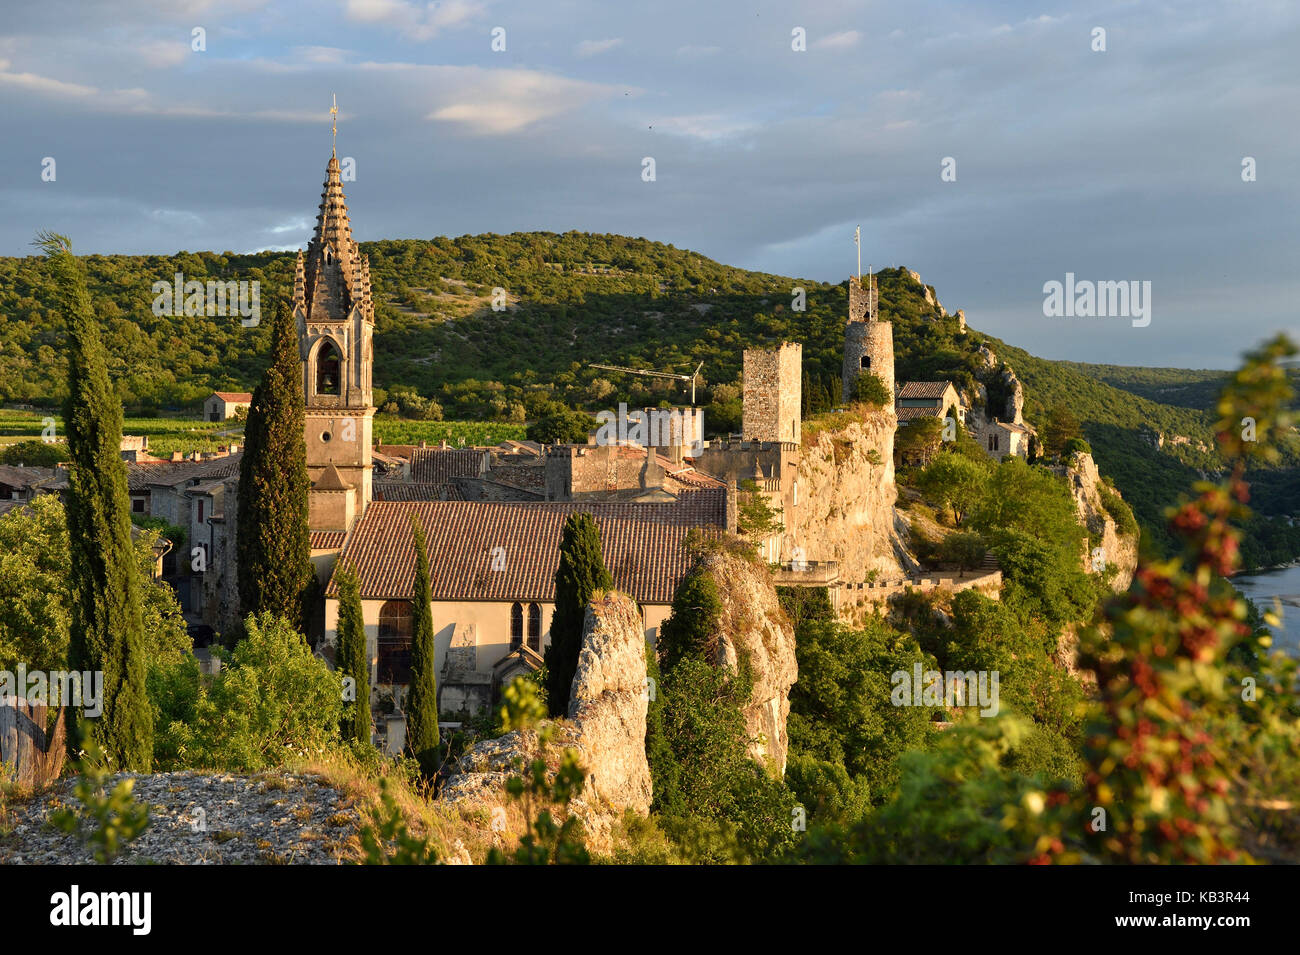 Frankreich, Gard, Rochefort Du Gard, beschriftet Les Plus beaux villages de France (Schönste Dörfer Frankreichs), mittelalterliches Dorf oberhalb des Flusses Ardeche Stockfoto